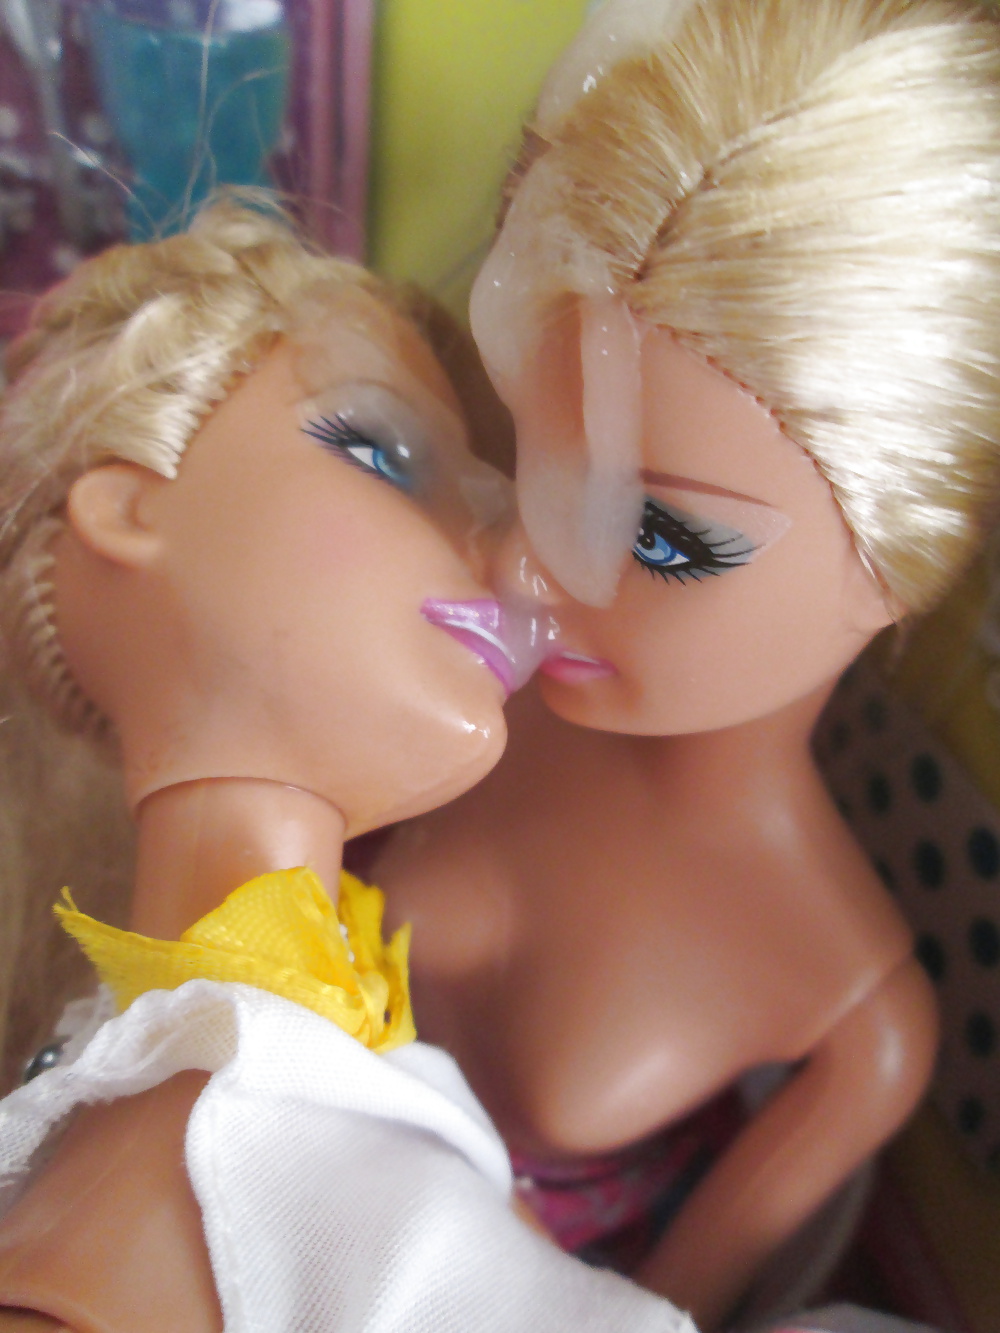 Doppel Barbie Schwestern Teilen Sich Einen Snack #40383847